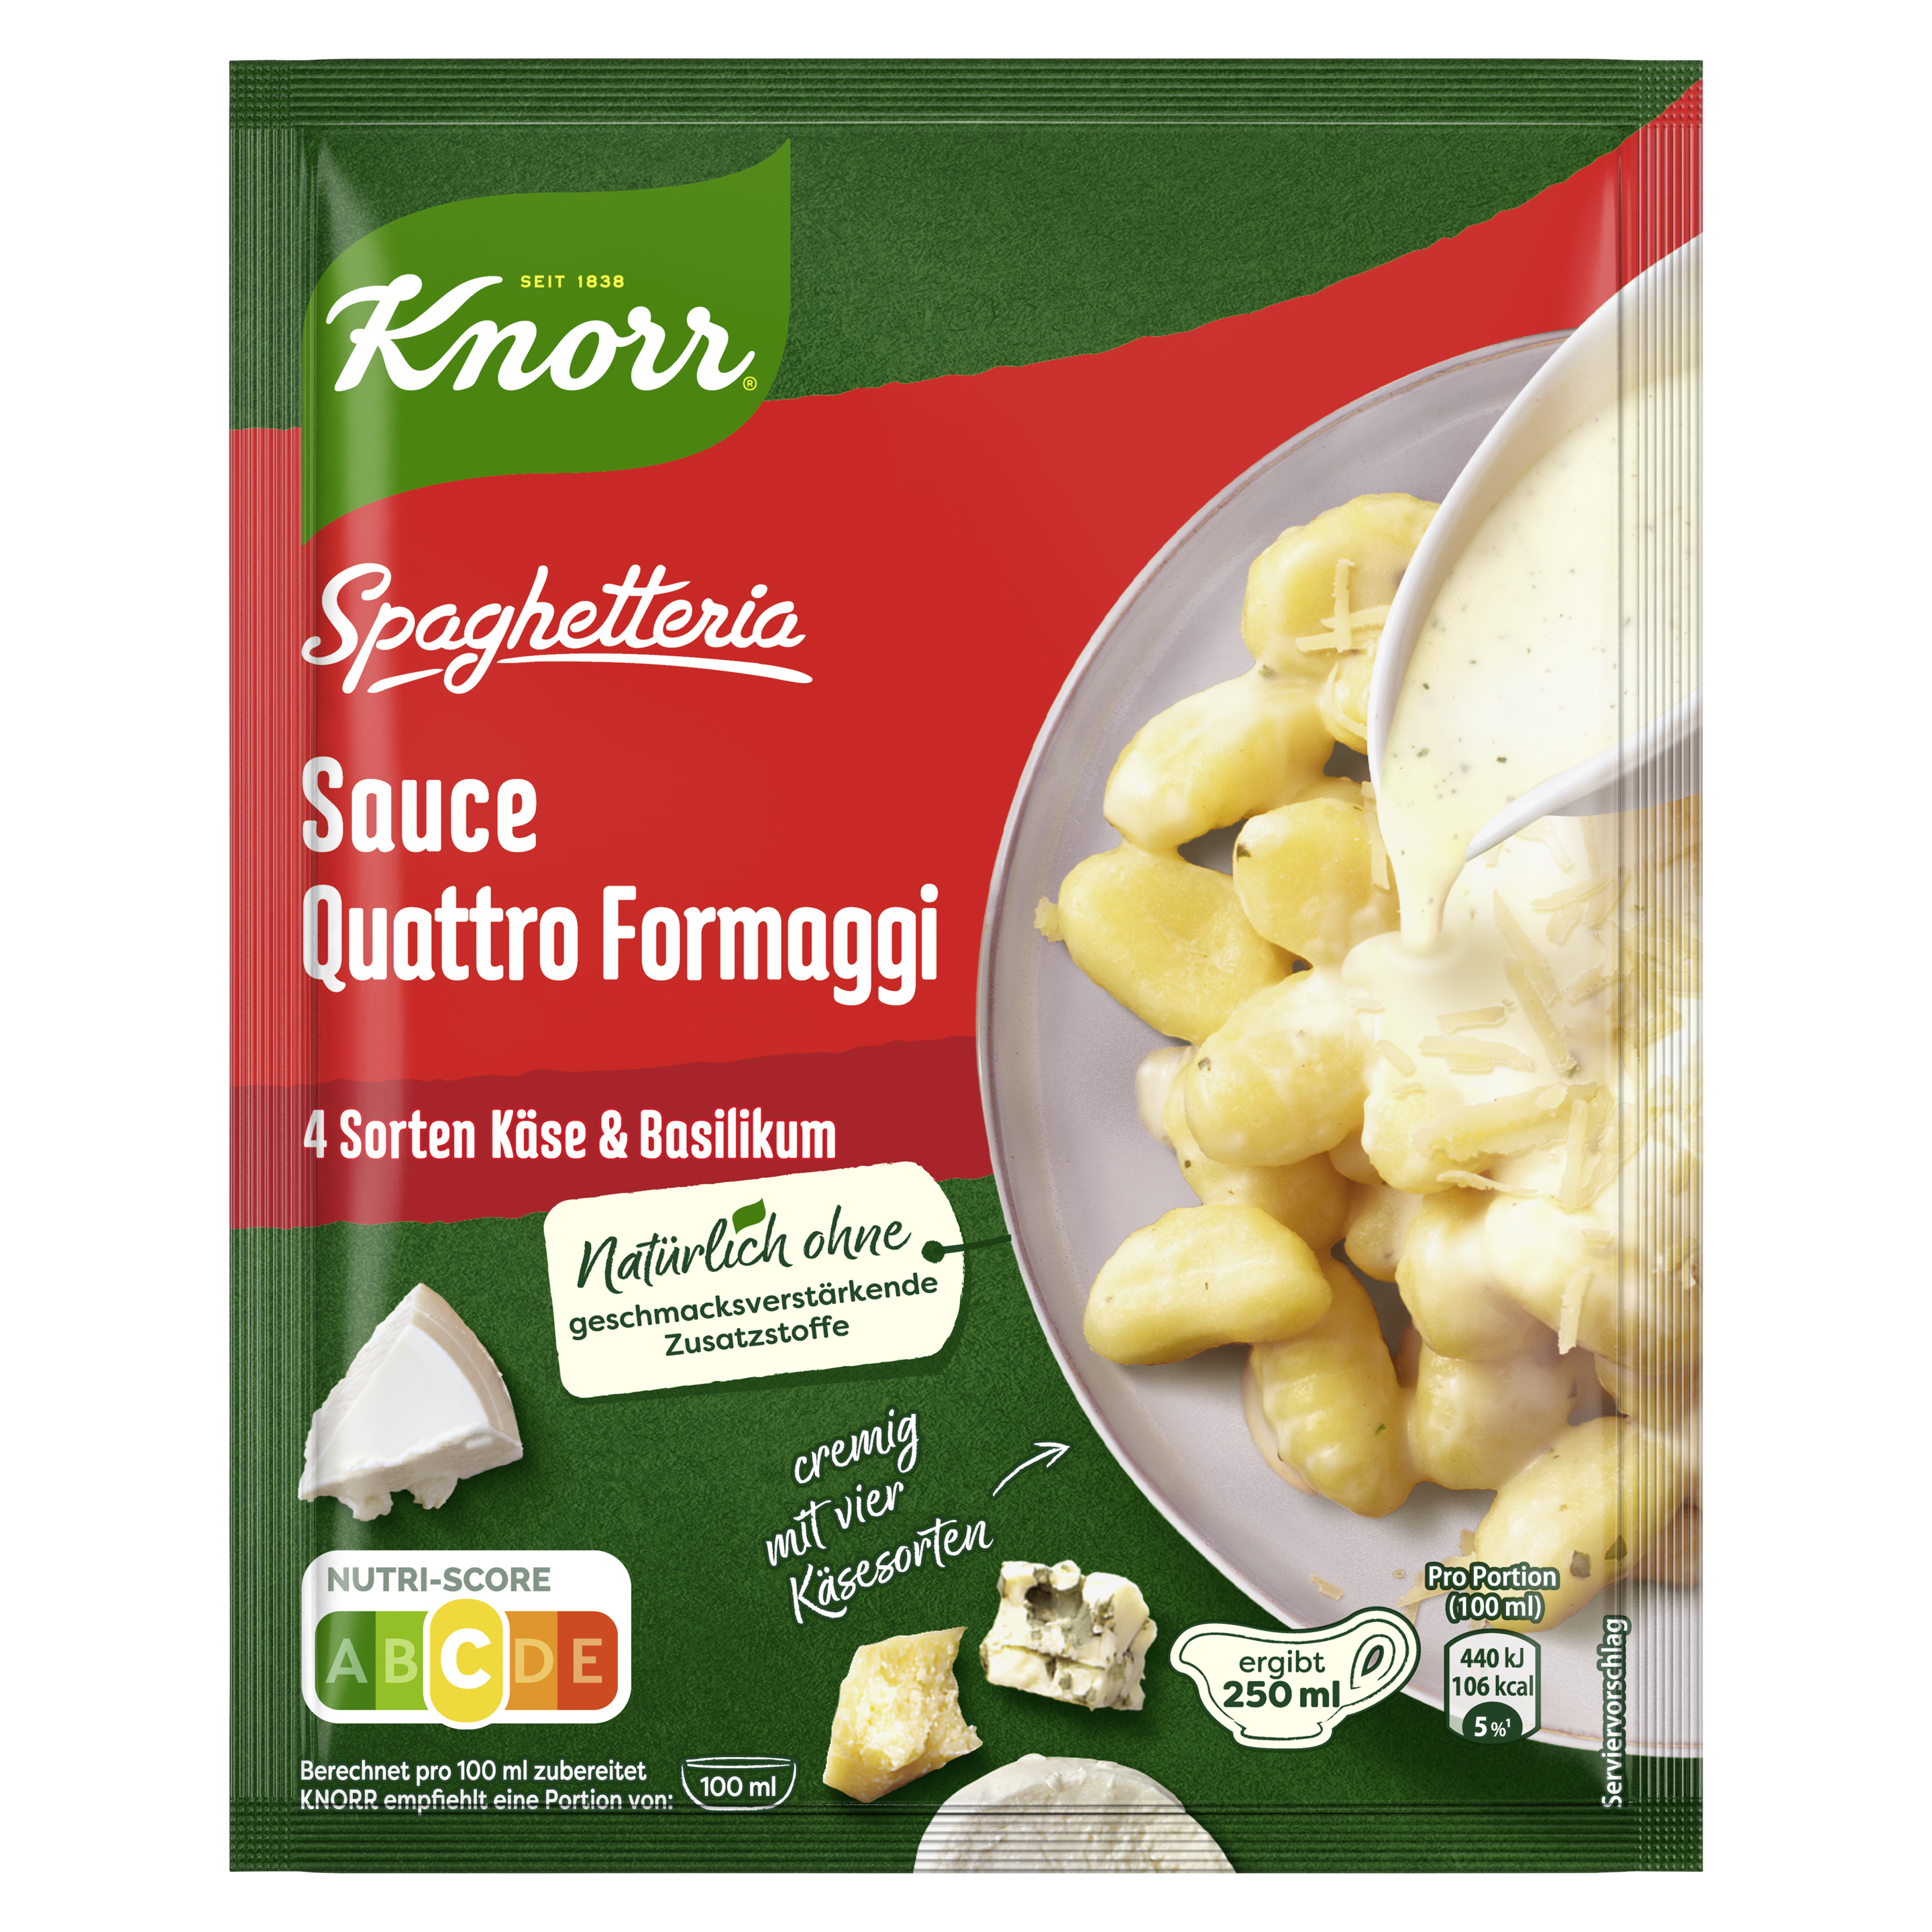 Knorr Spaghetteria Sauce Quattro Formaggi ergibt 250 ml